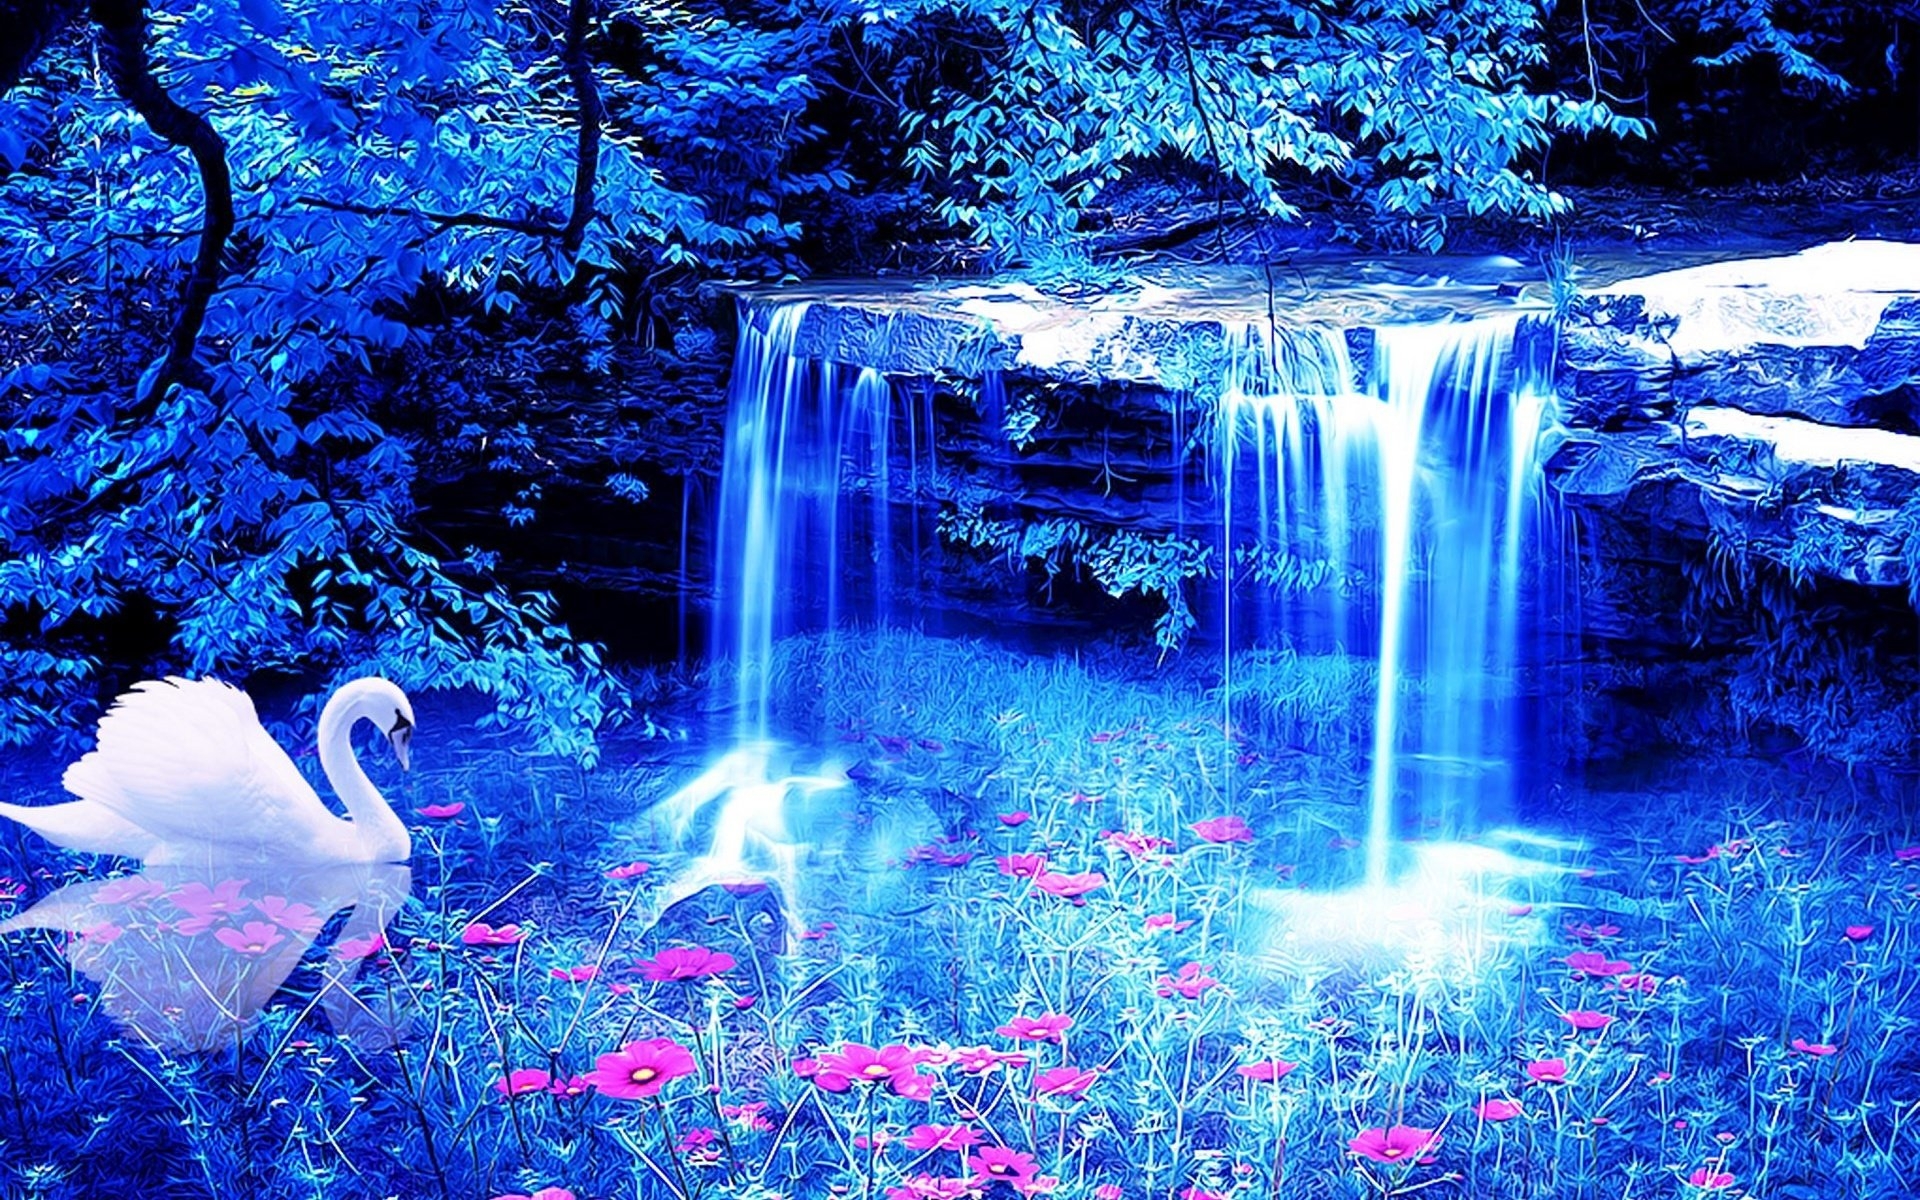 Обои на телефон живой водопад. Живая природа водопады. Сказочный водопад. Красивые картинки. Красивые картины.